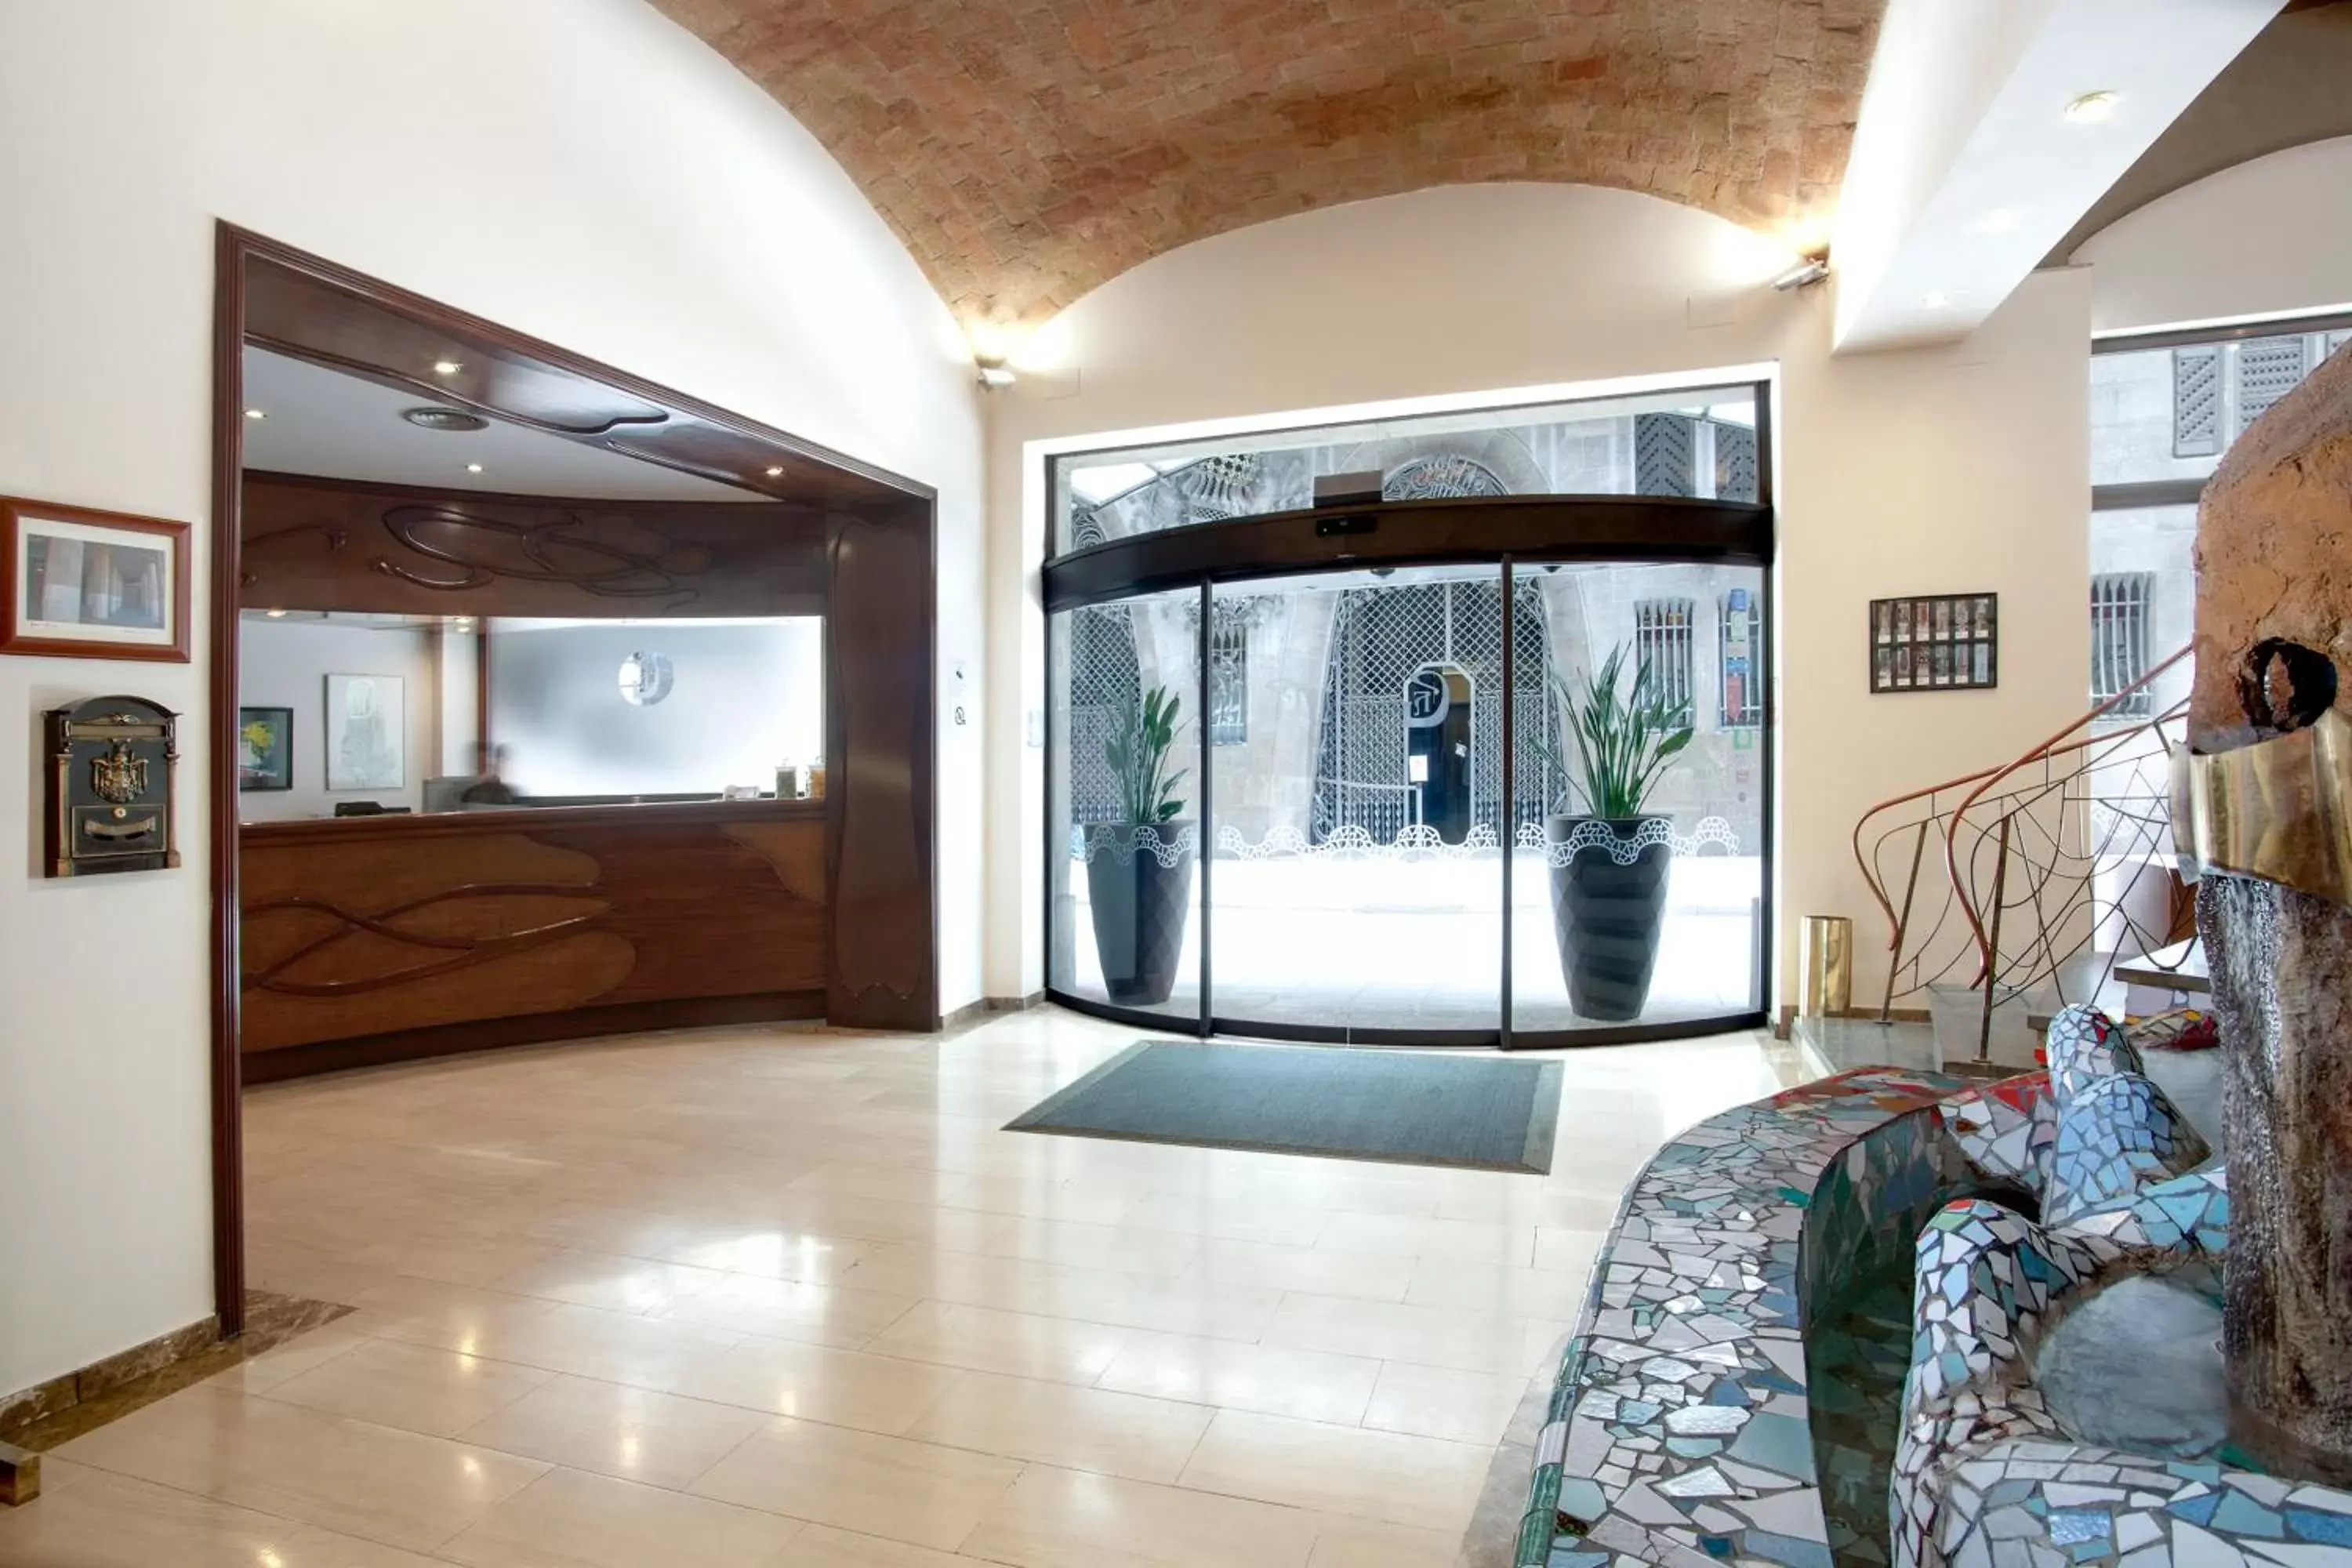 Lobby or reception, Lobby/Reception in Gaudi Hotel